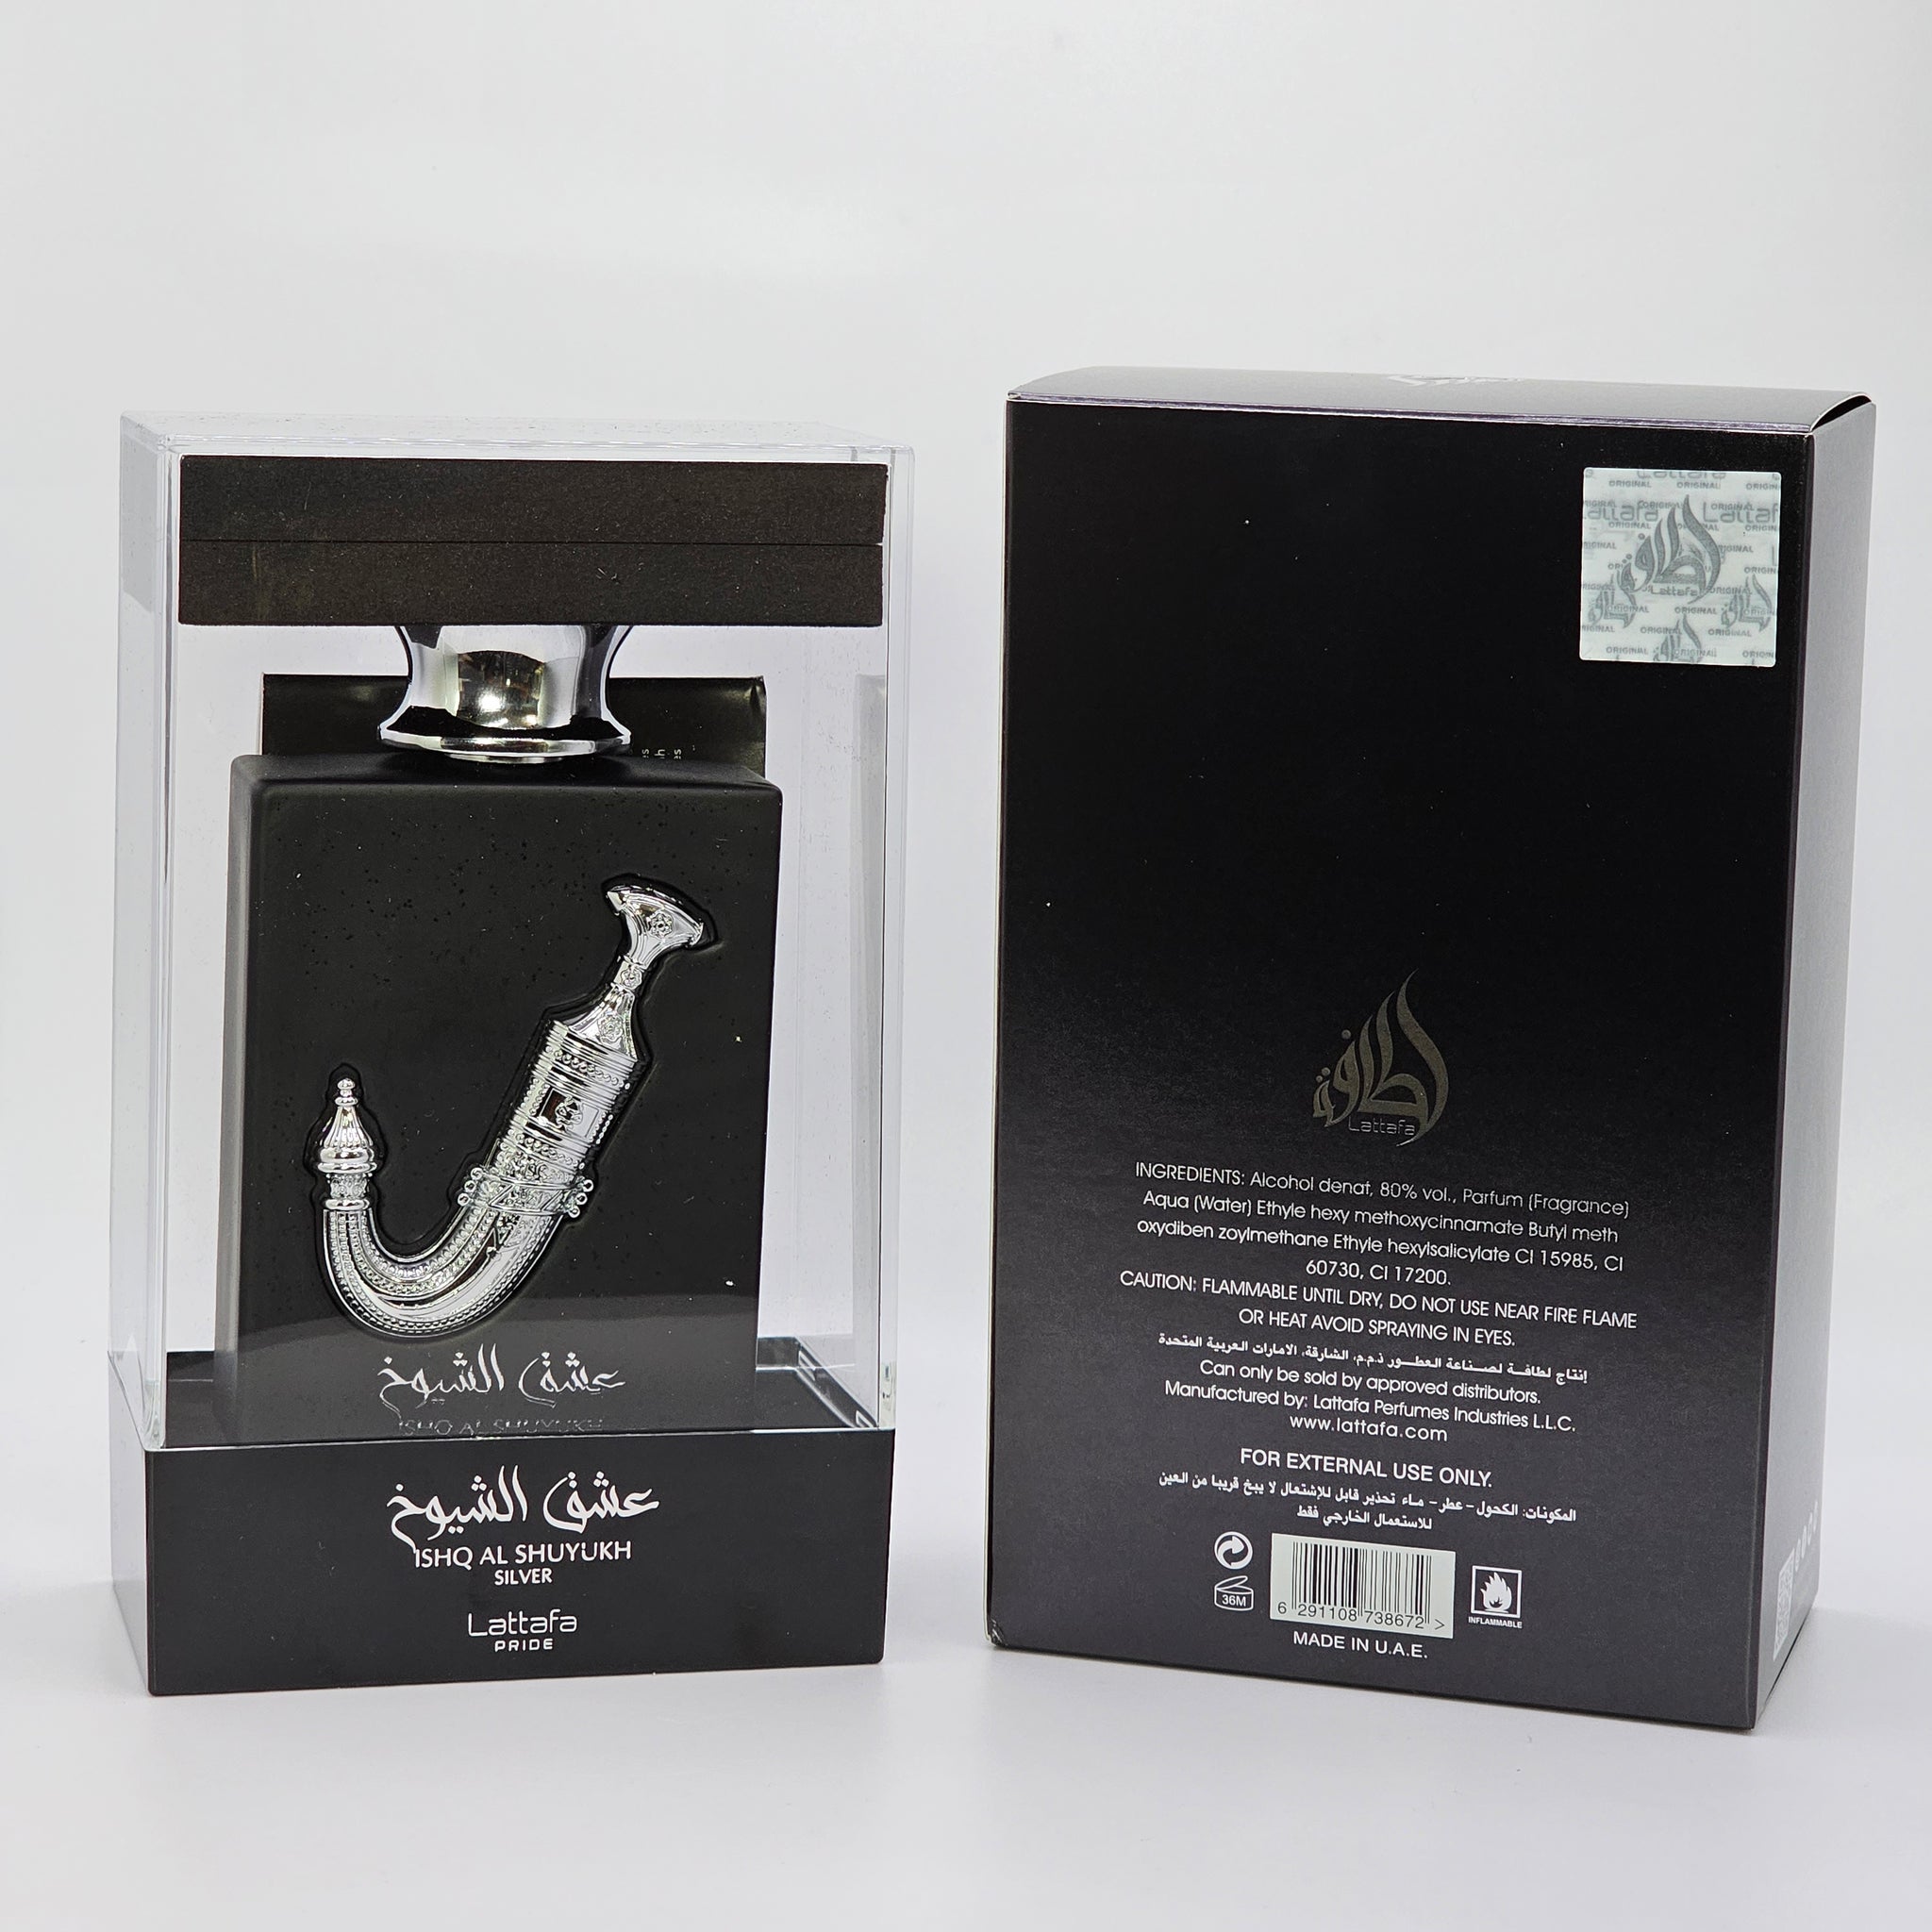 Lattafa Perfumes Ishq Al Shuyukh Silver For Unisex Eau De Parfum Spray, 3.4 Oz